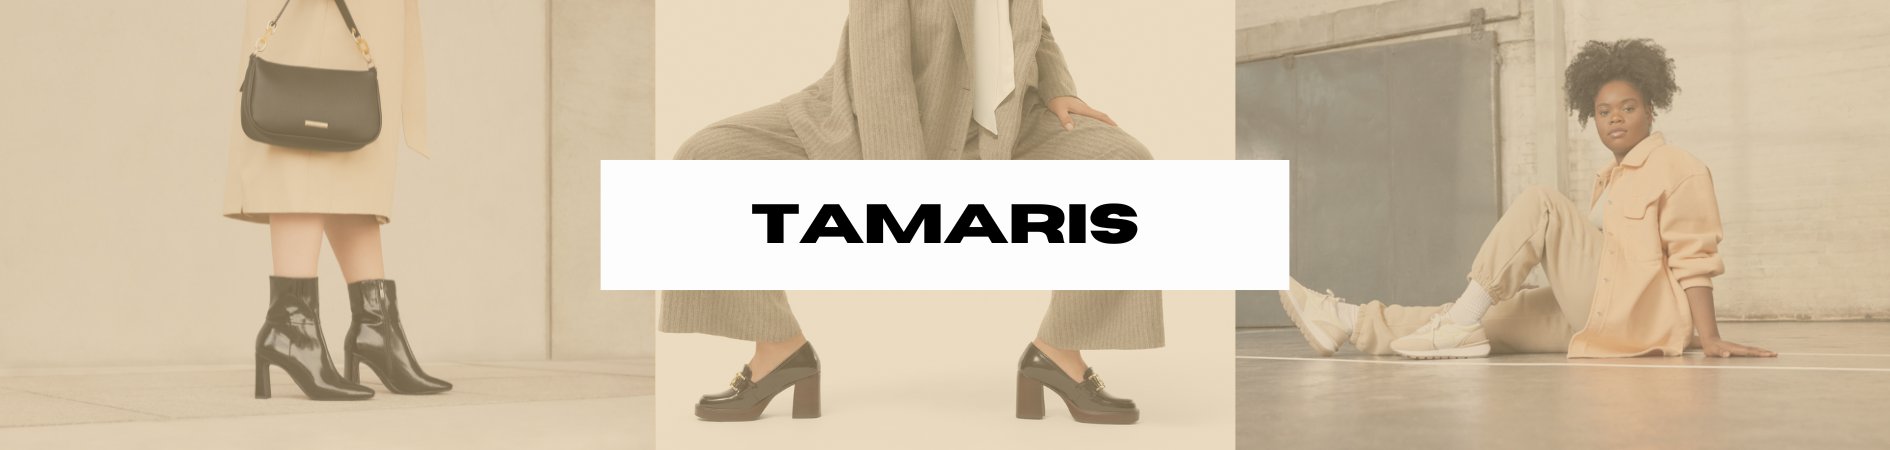 Mart Badekar Lav et navn Tamaris – tagged "low-heels" – PurpleTag.ie